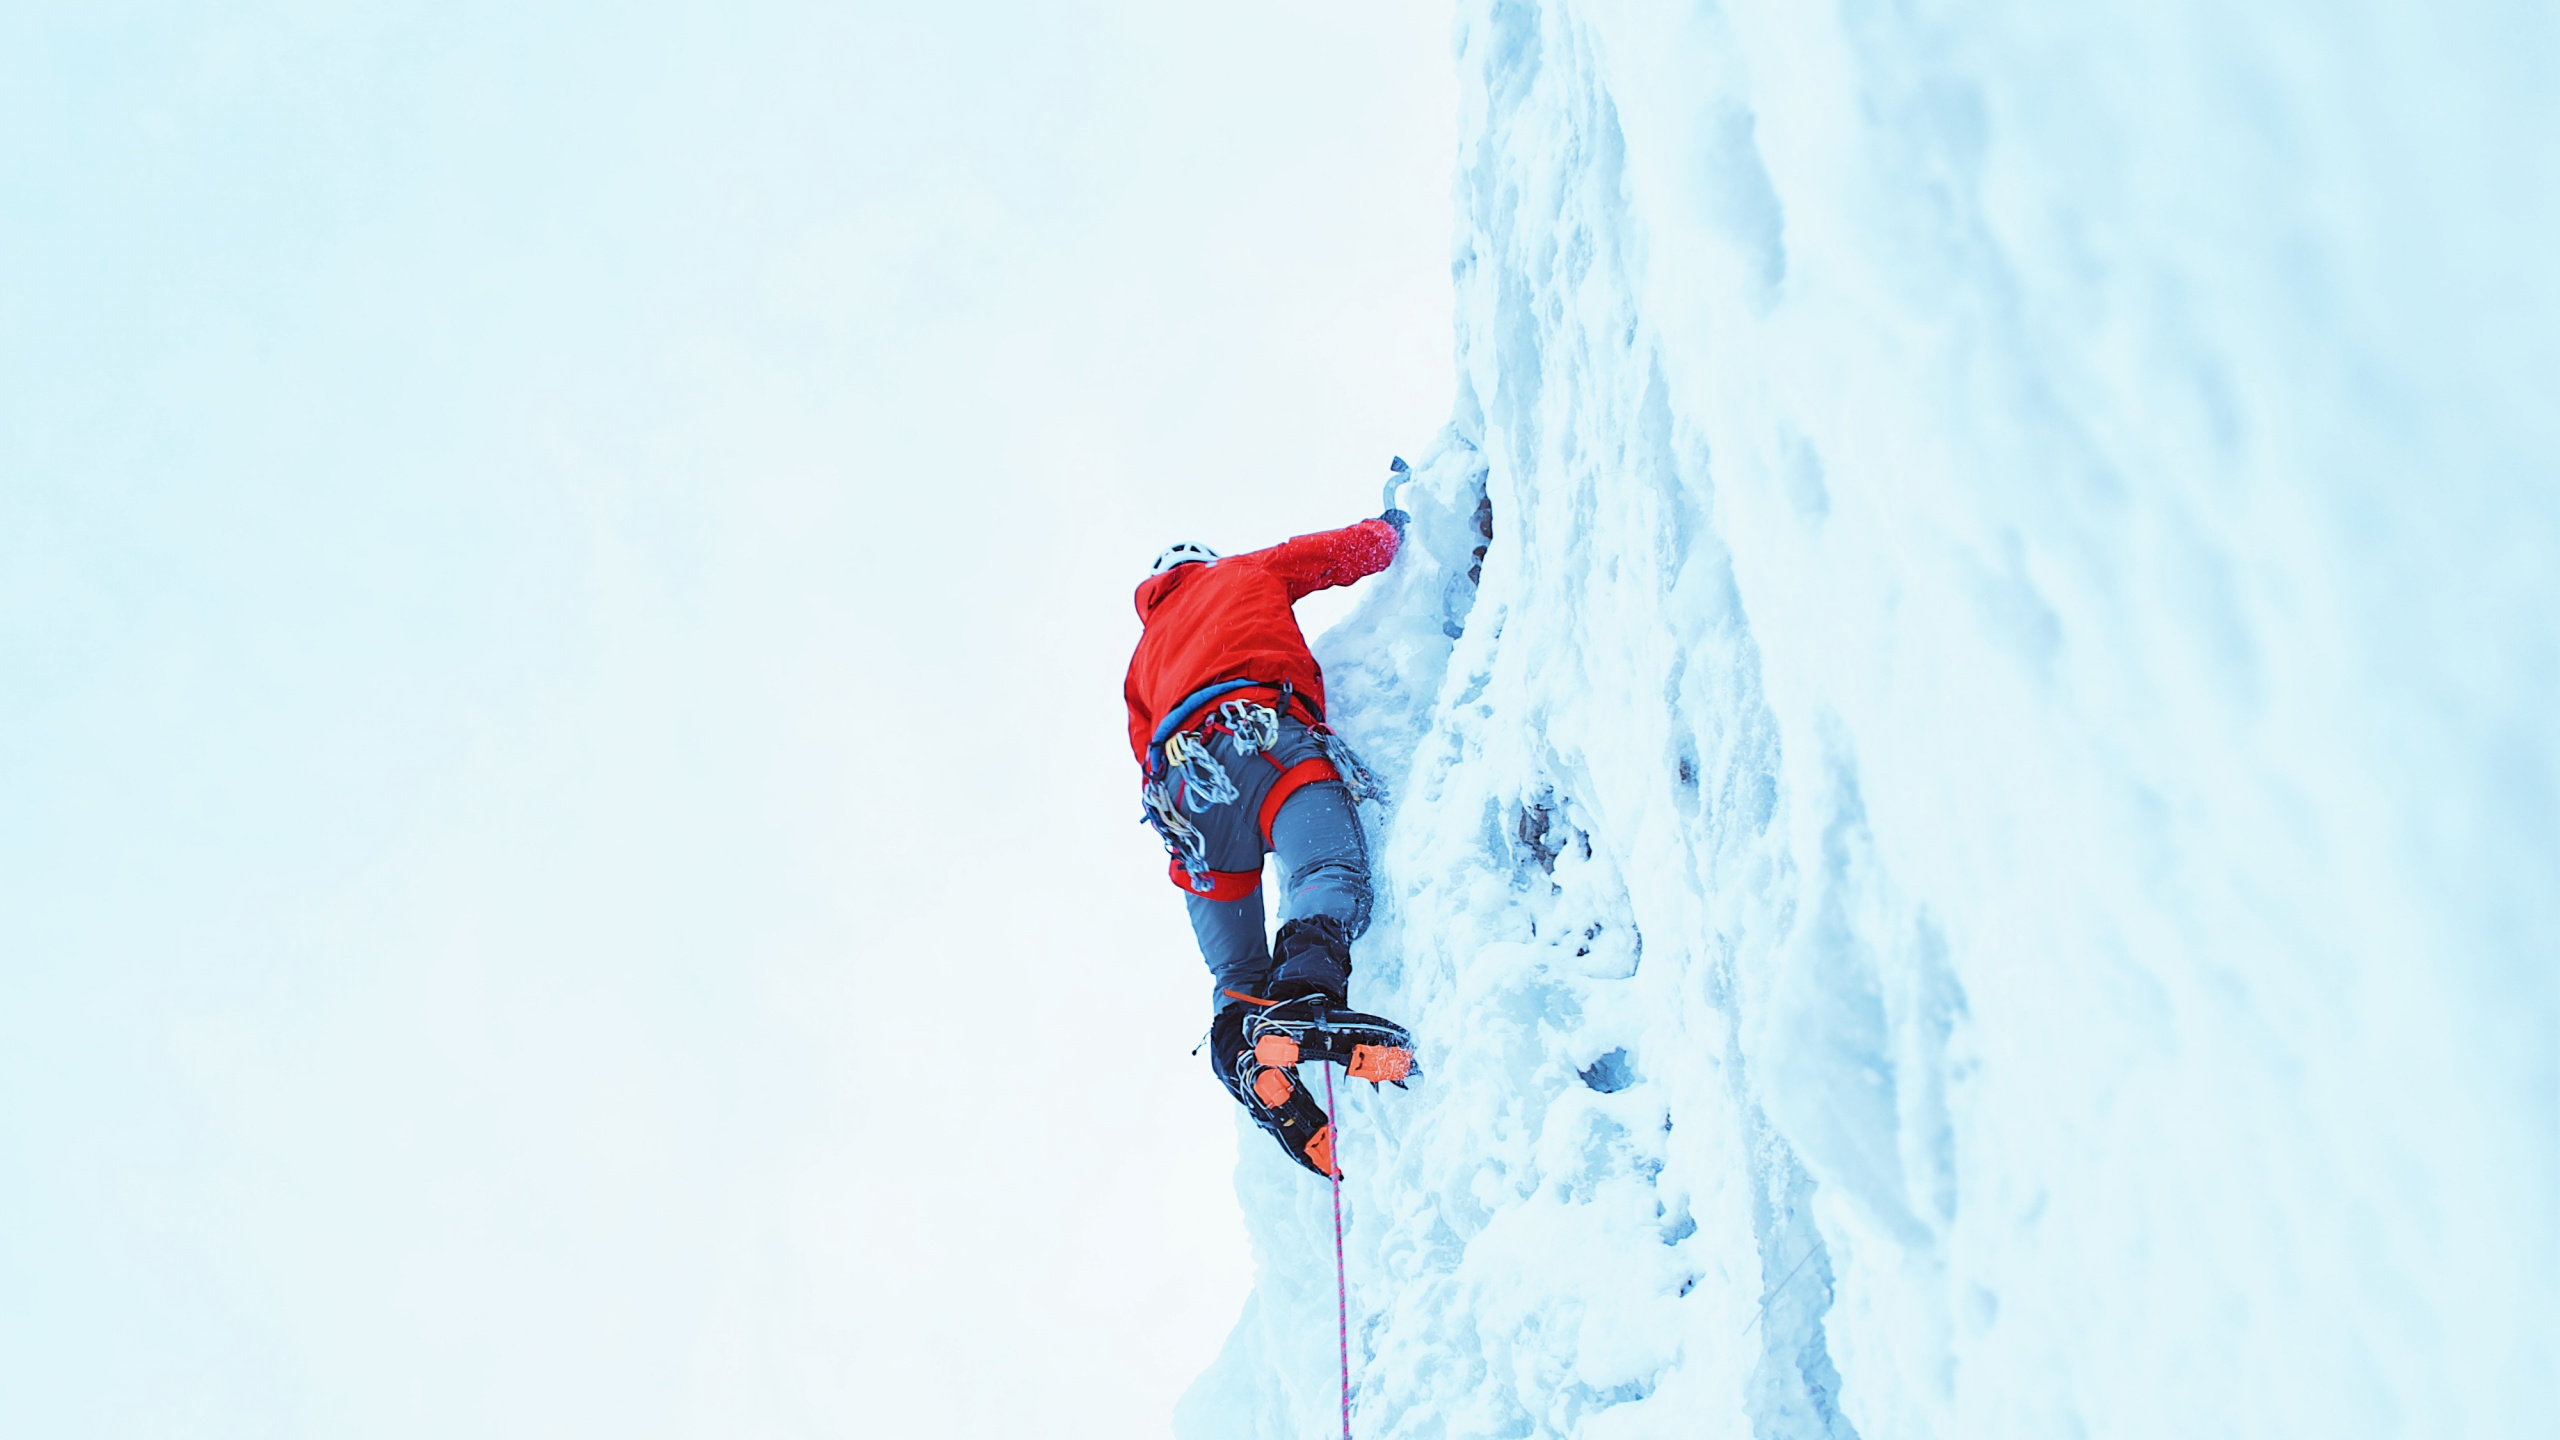 攀登, 极限运动, 登山, 冒险, 娱乐 壁纸 2560x1440 允许